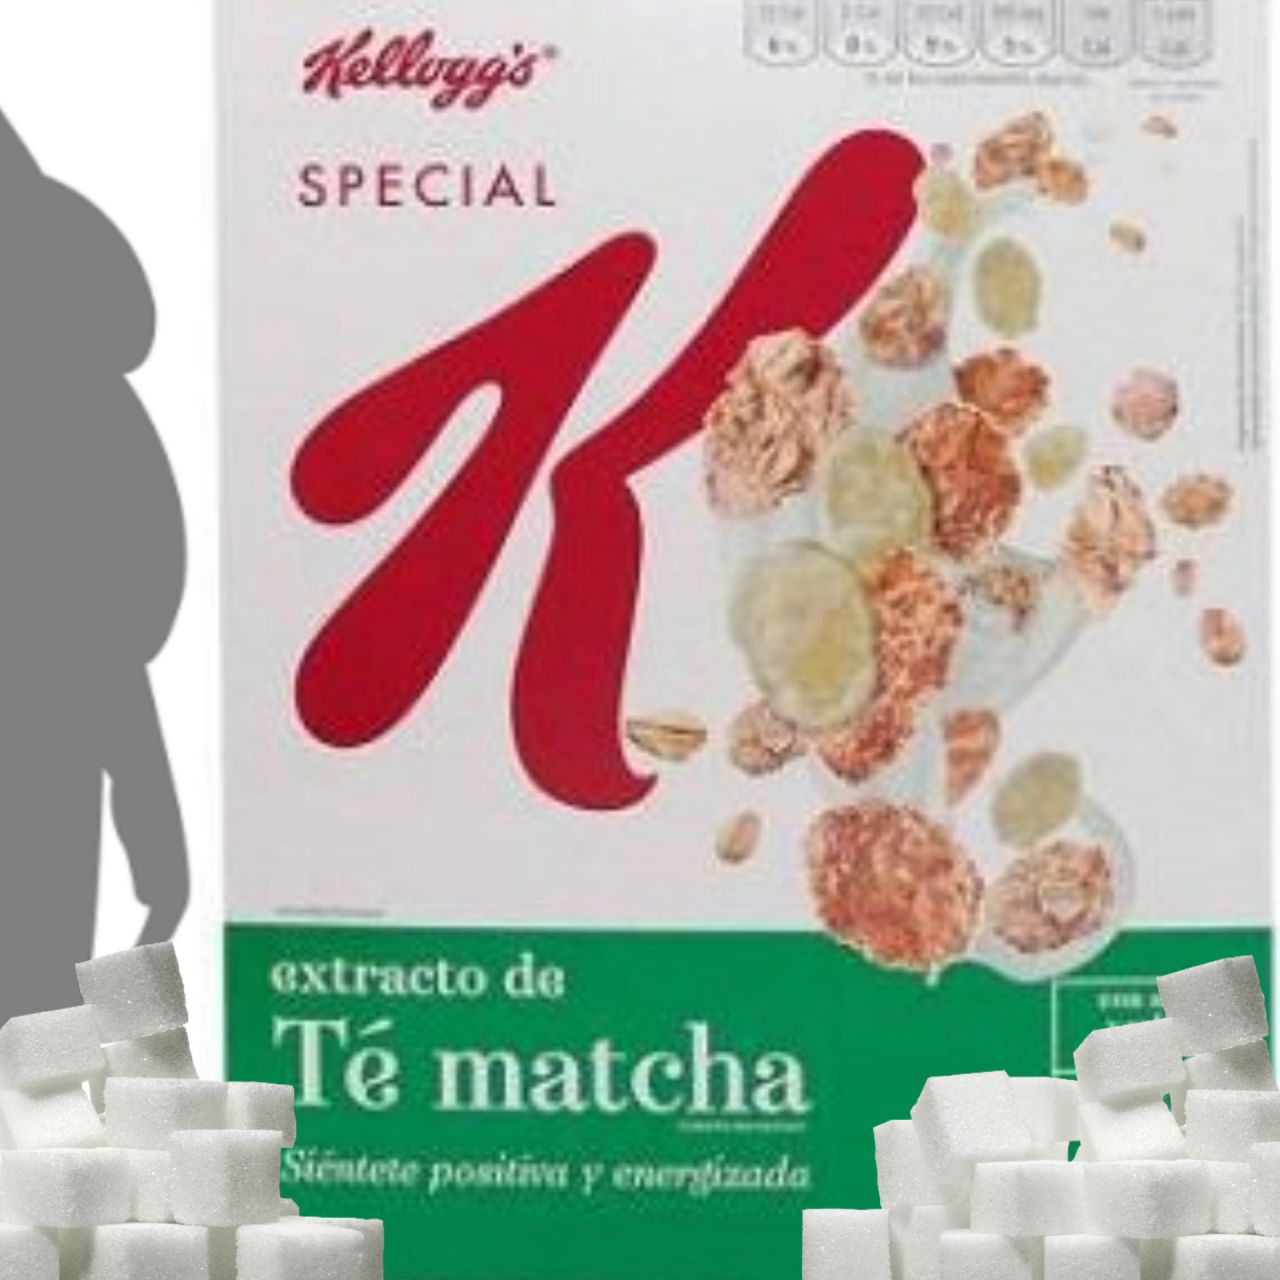 Special K y su alto contenido en azúcares y calorías